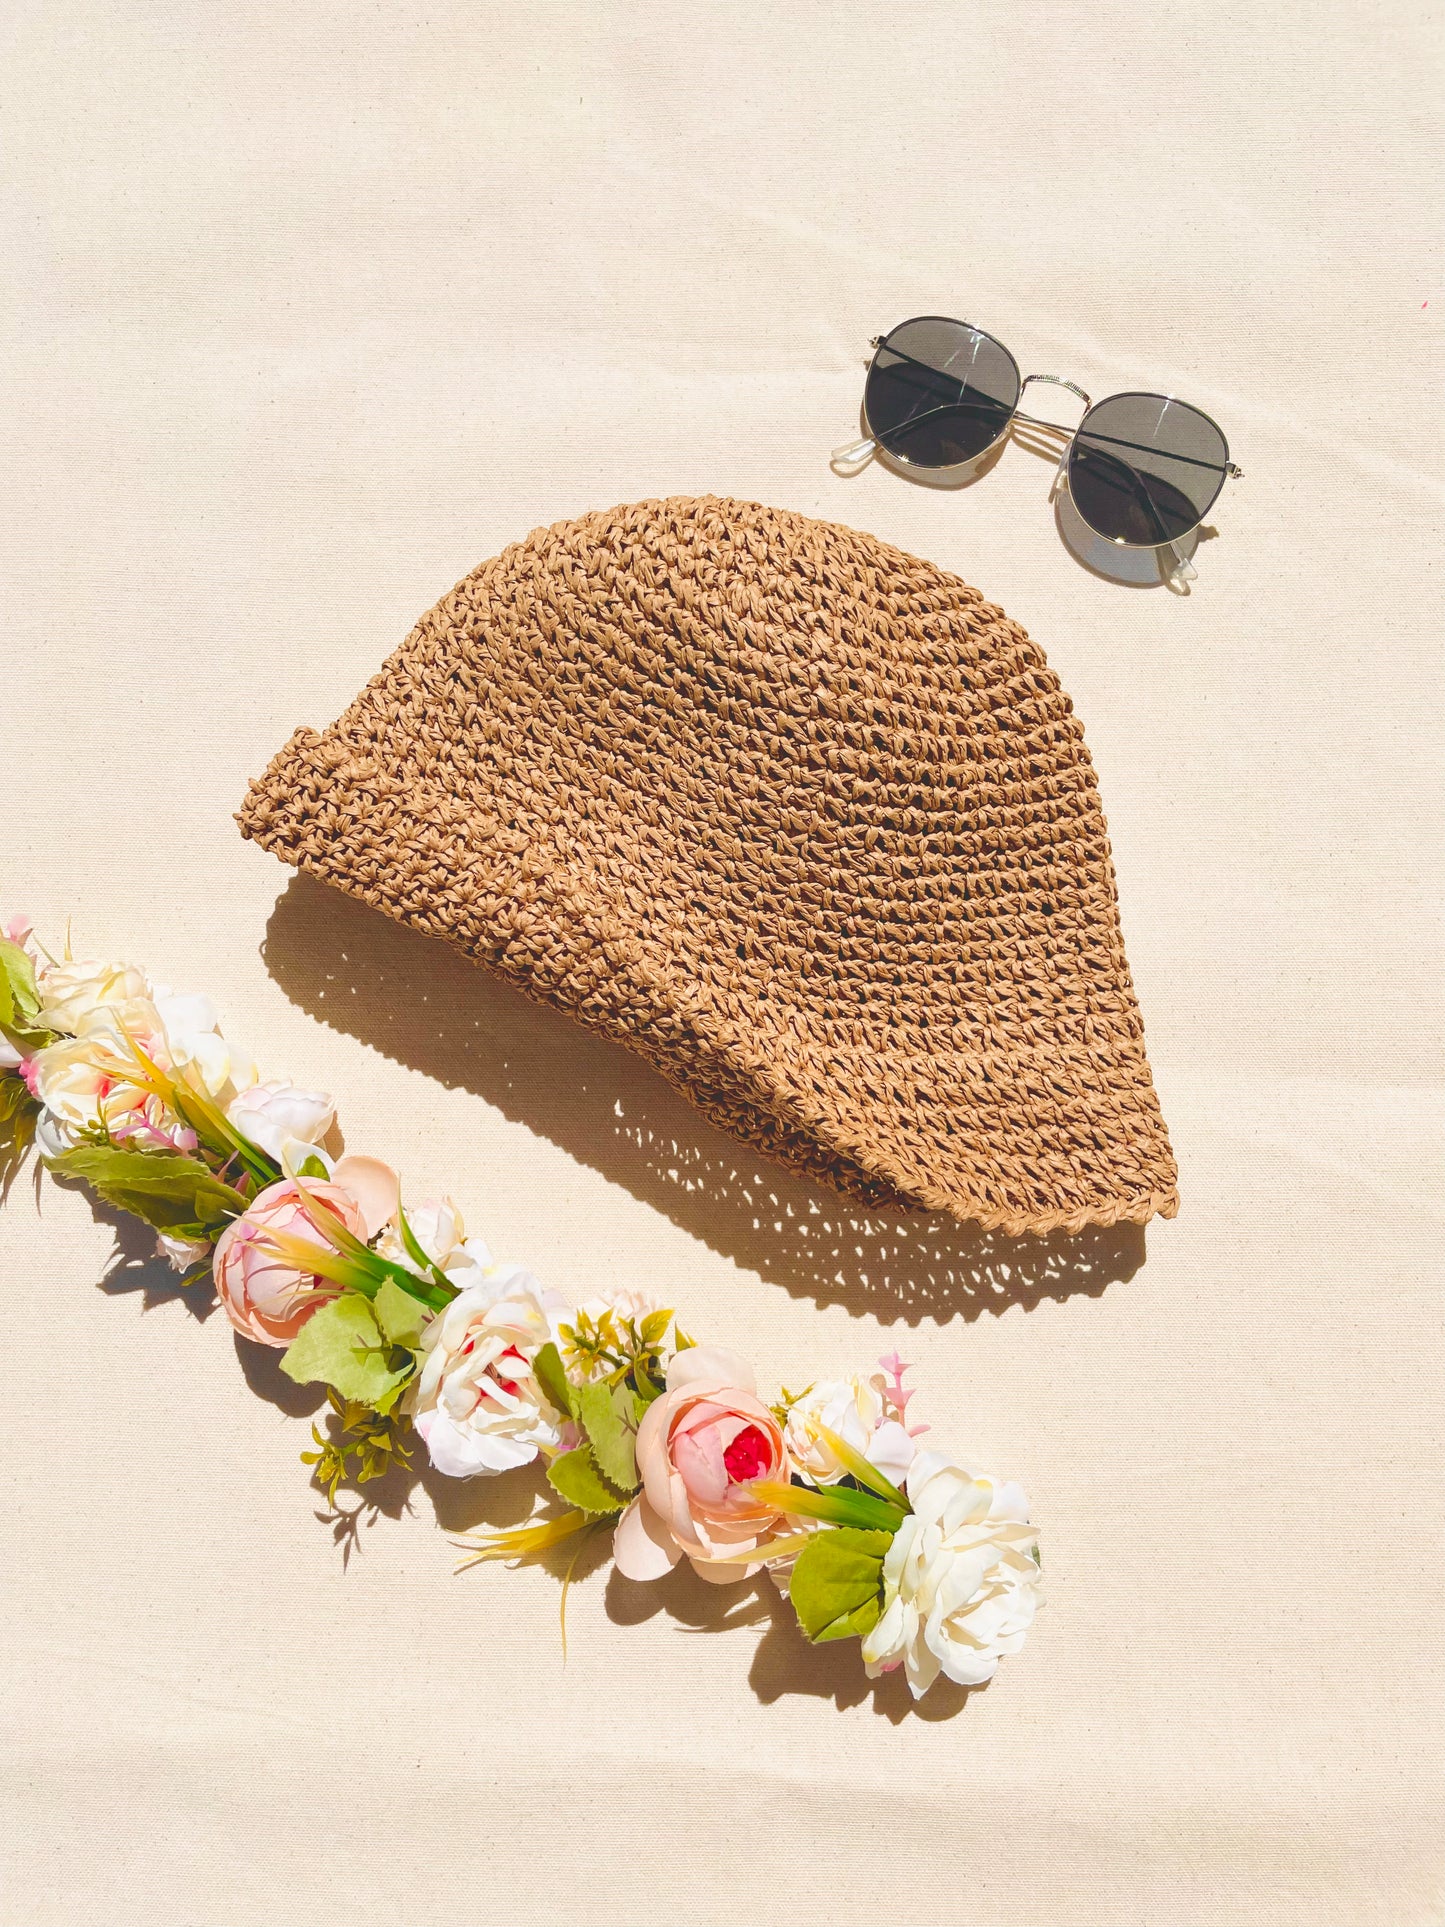 Beach Straw Bucket Hat